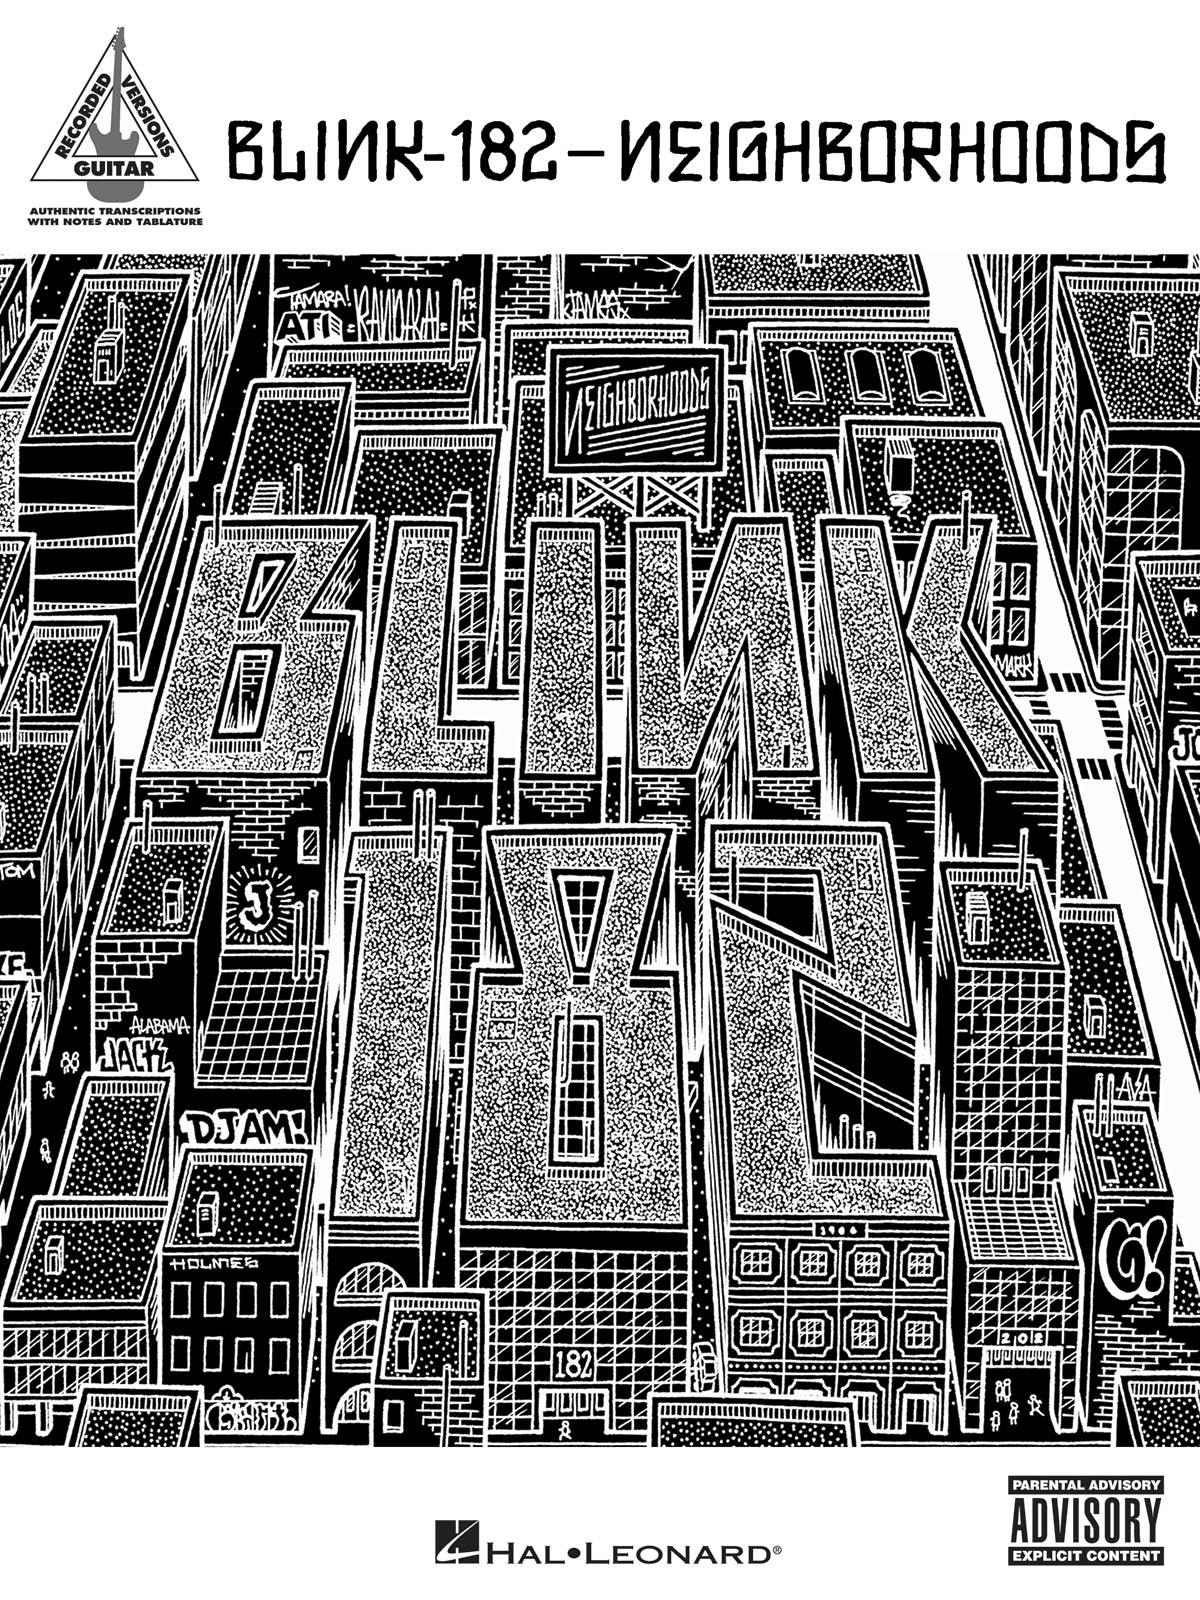 Blink-182: Blink-182 - Neighborhoods: Guitar Solo: Album Songbook